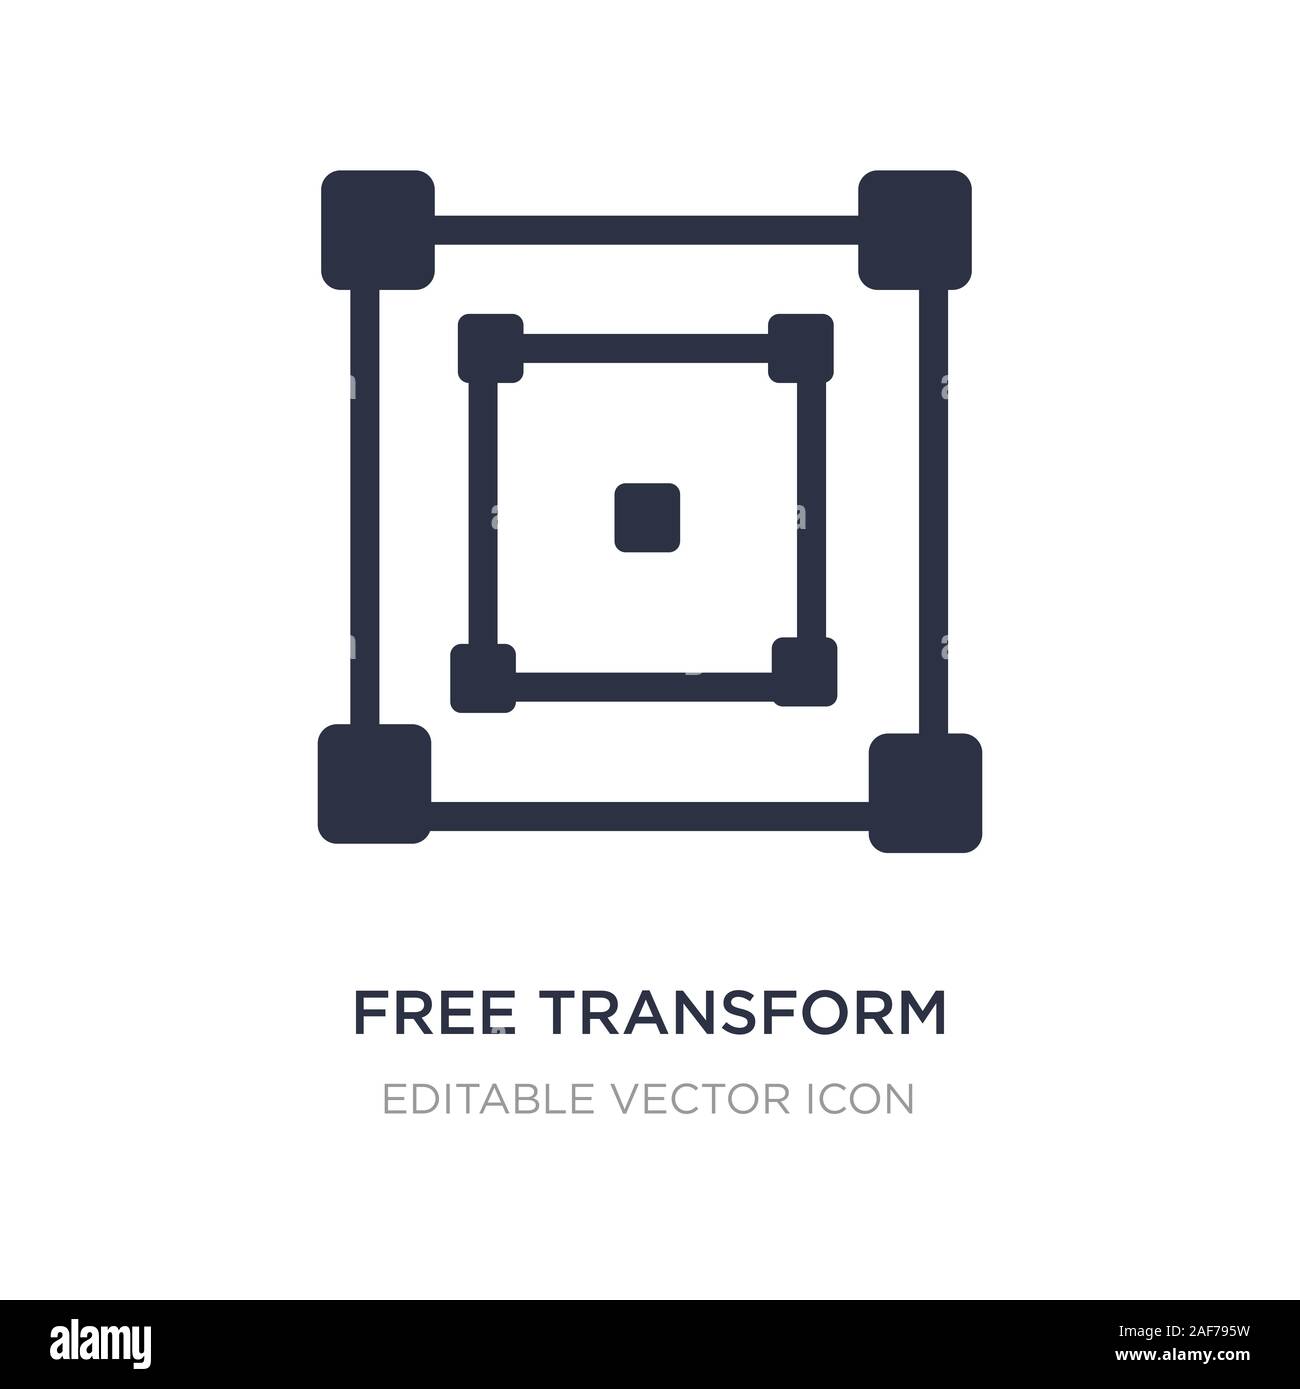 Free transform là một công cụ vô cùng hữu ích trong việc chỉnh sửa hình ảnh. Bạn có thể đưa bất kỳ ảnh nào vào và biến đổi chúng theo ý muốn. Hãy xem hình ảnh liên quan và khám phá mọi tính năng của free transform để có thể chỉnh sửa hình ảnh của bạn trở nên chuyên nghiệp hơn.